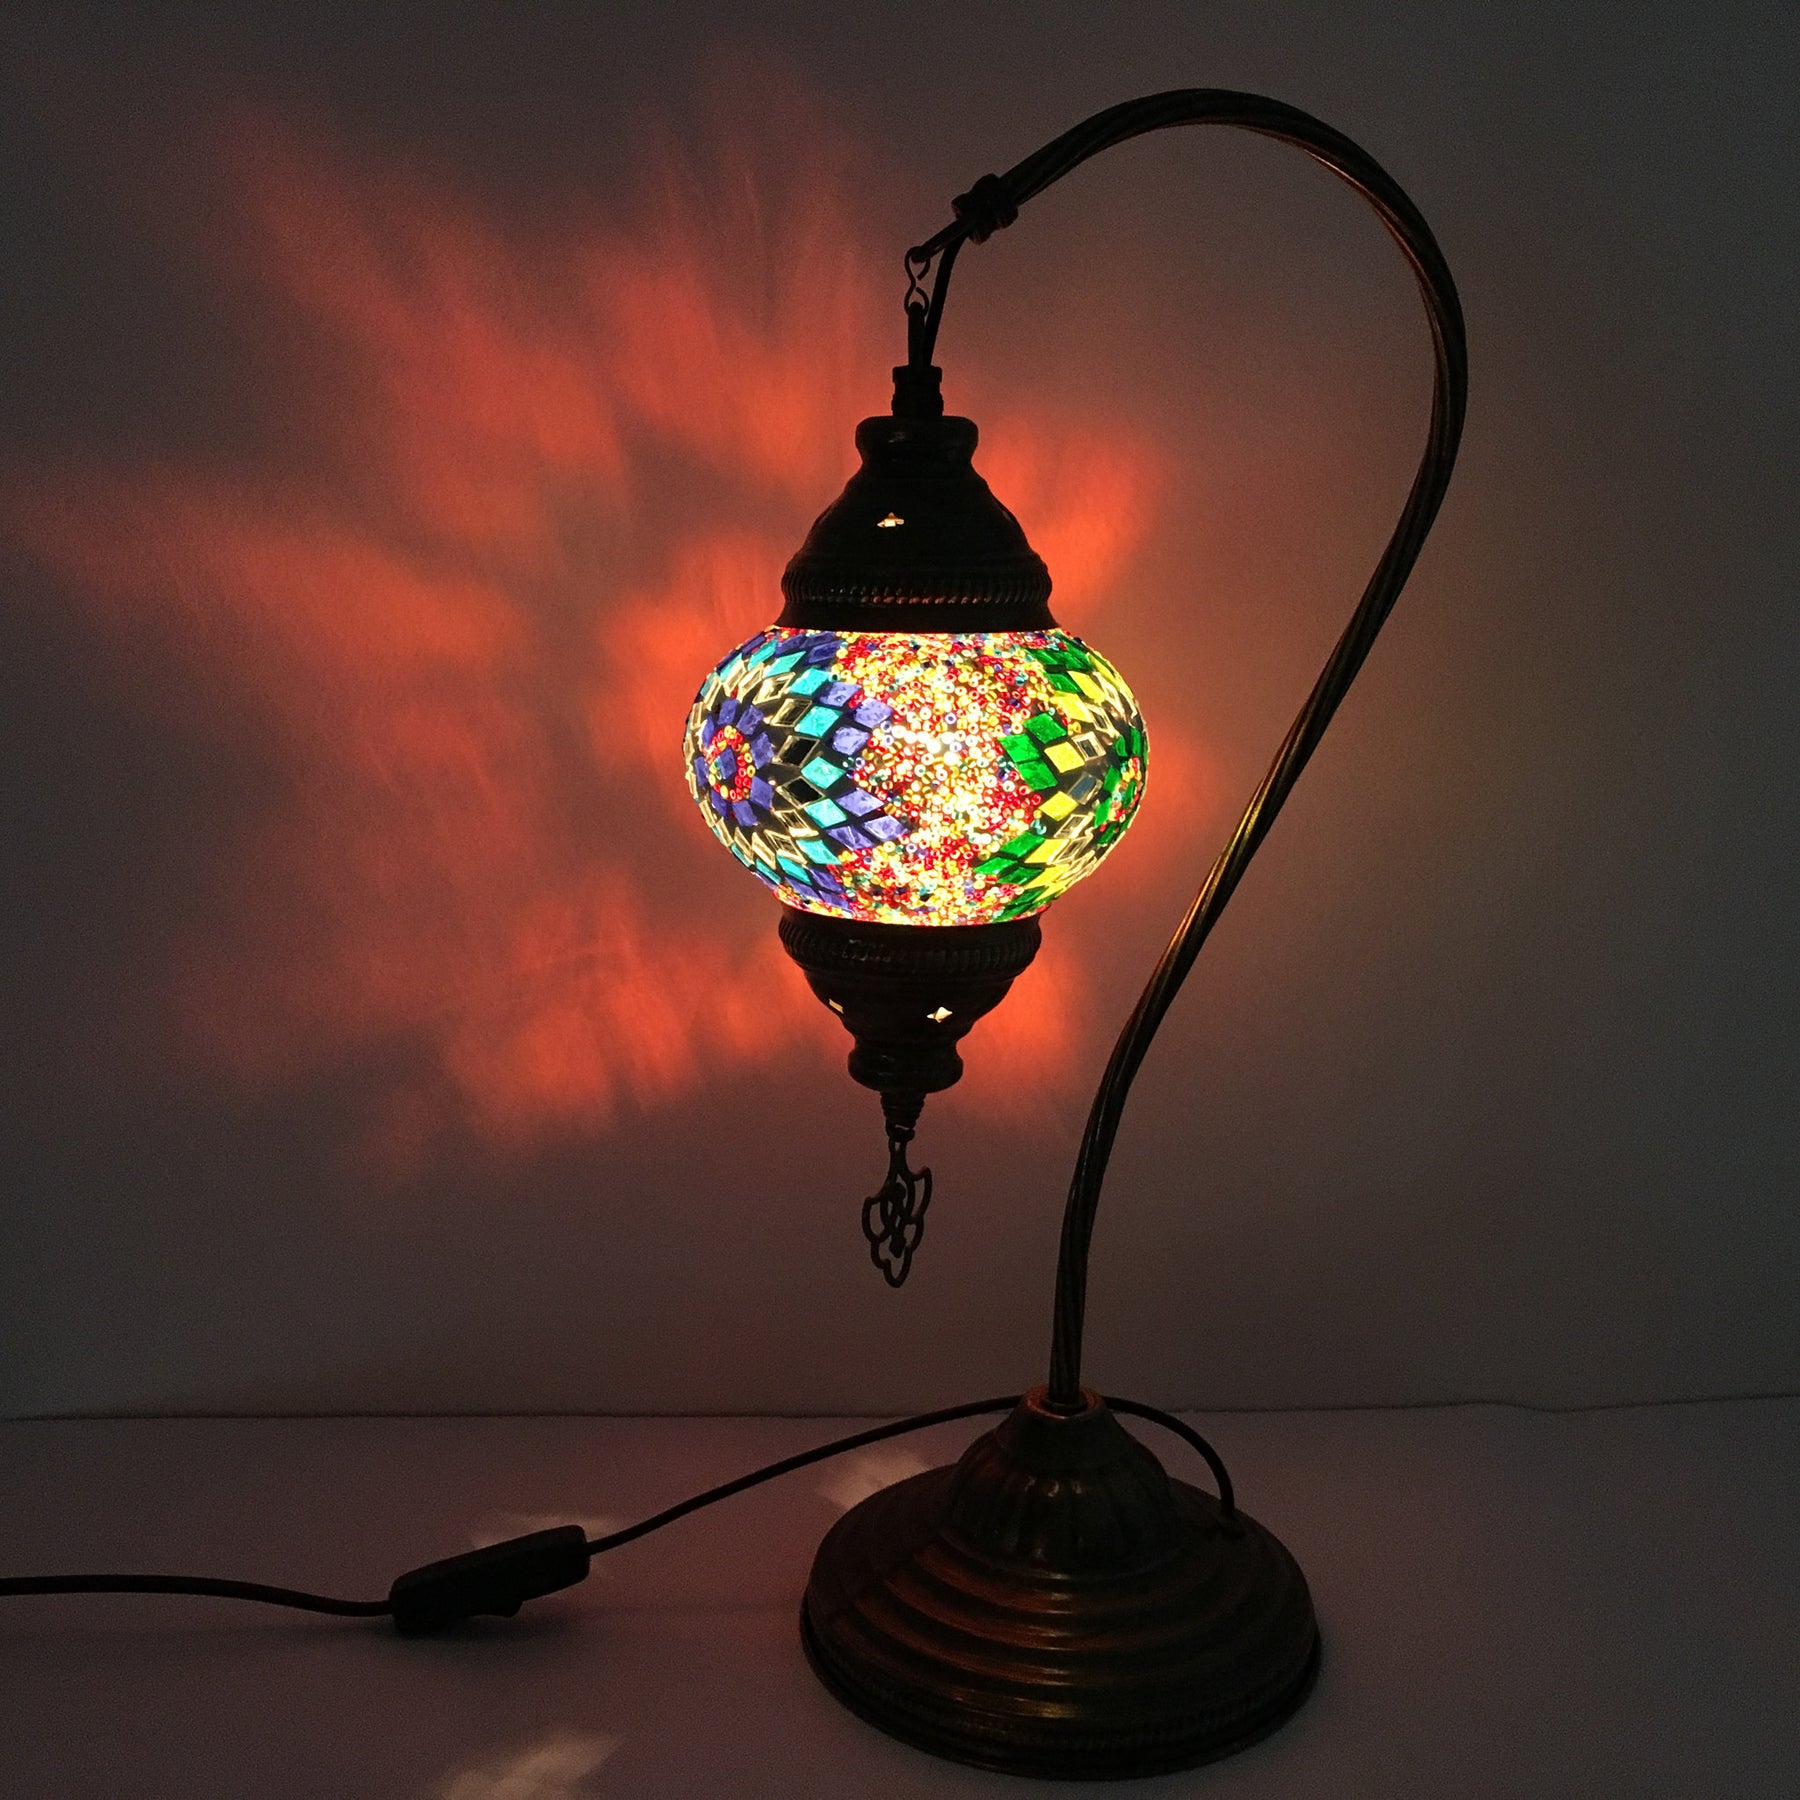 Turkish Mosaic Lamp with vintage style Swan neck metal base